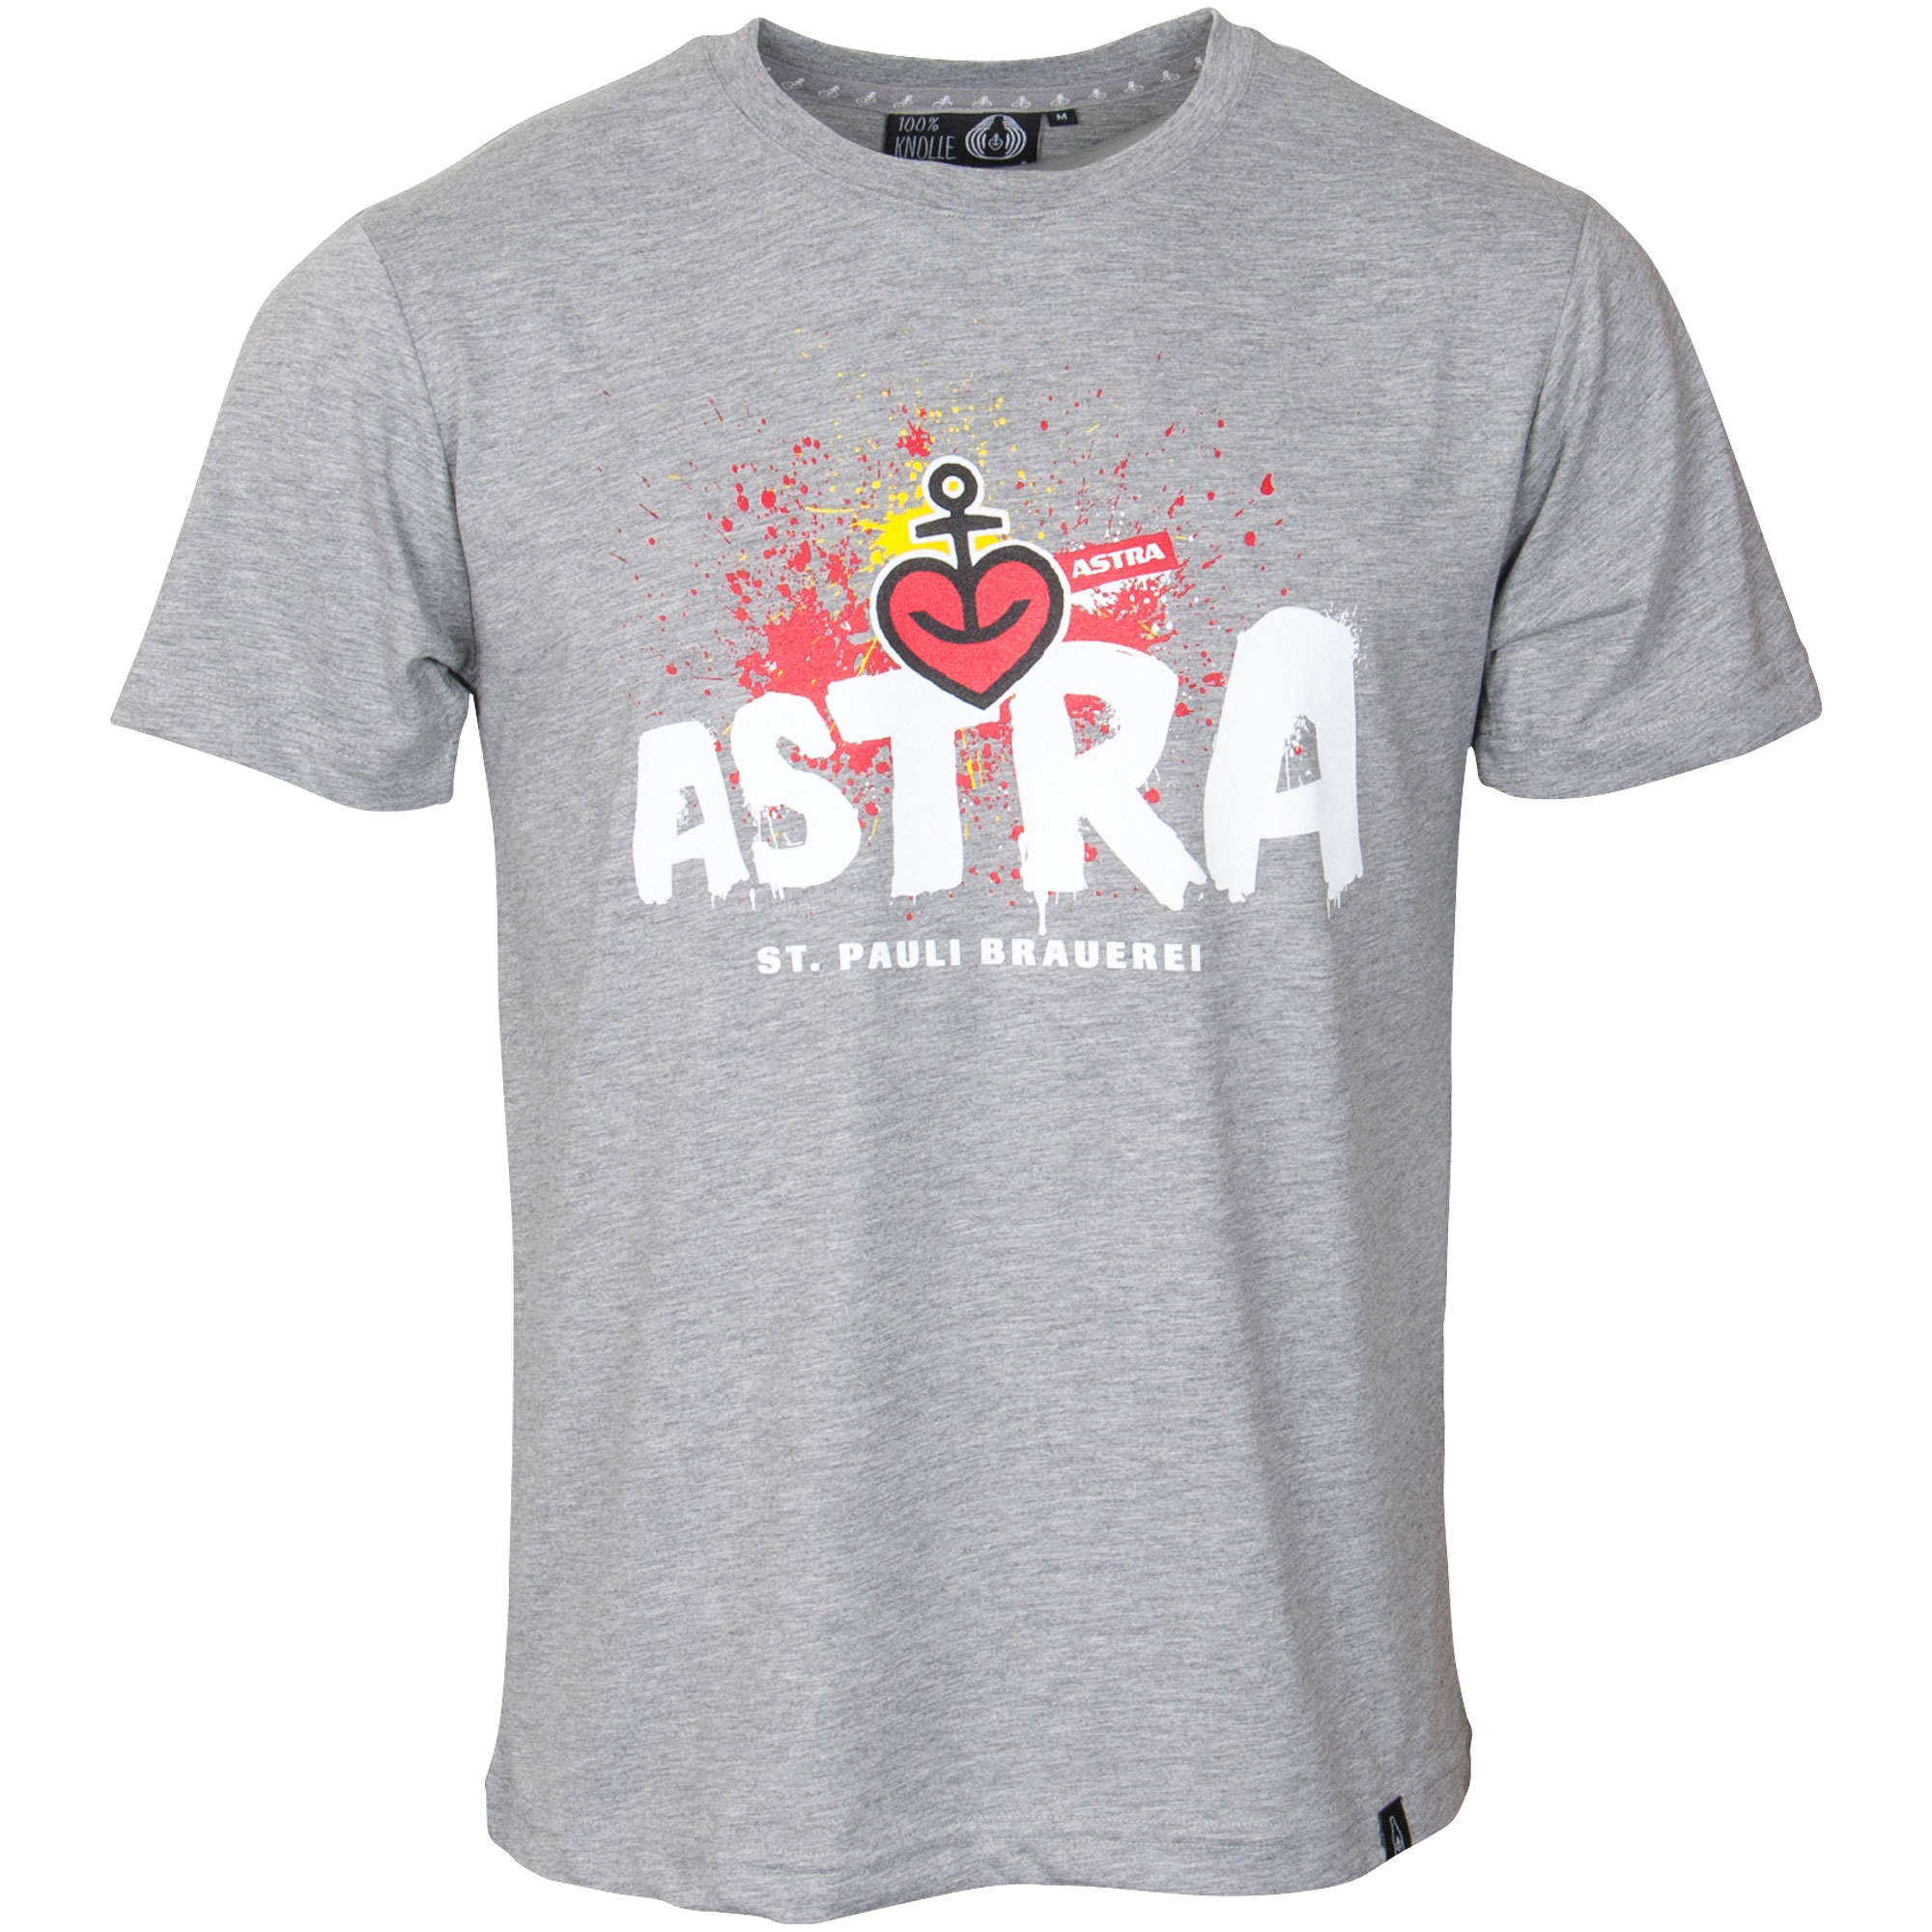 Astra - T-Shirt St. Pauli Brauerei - grau